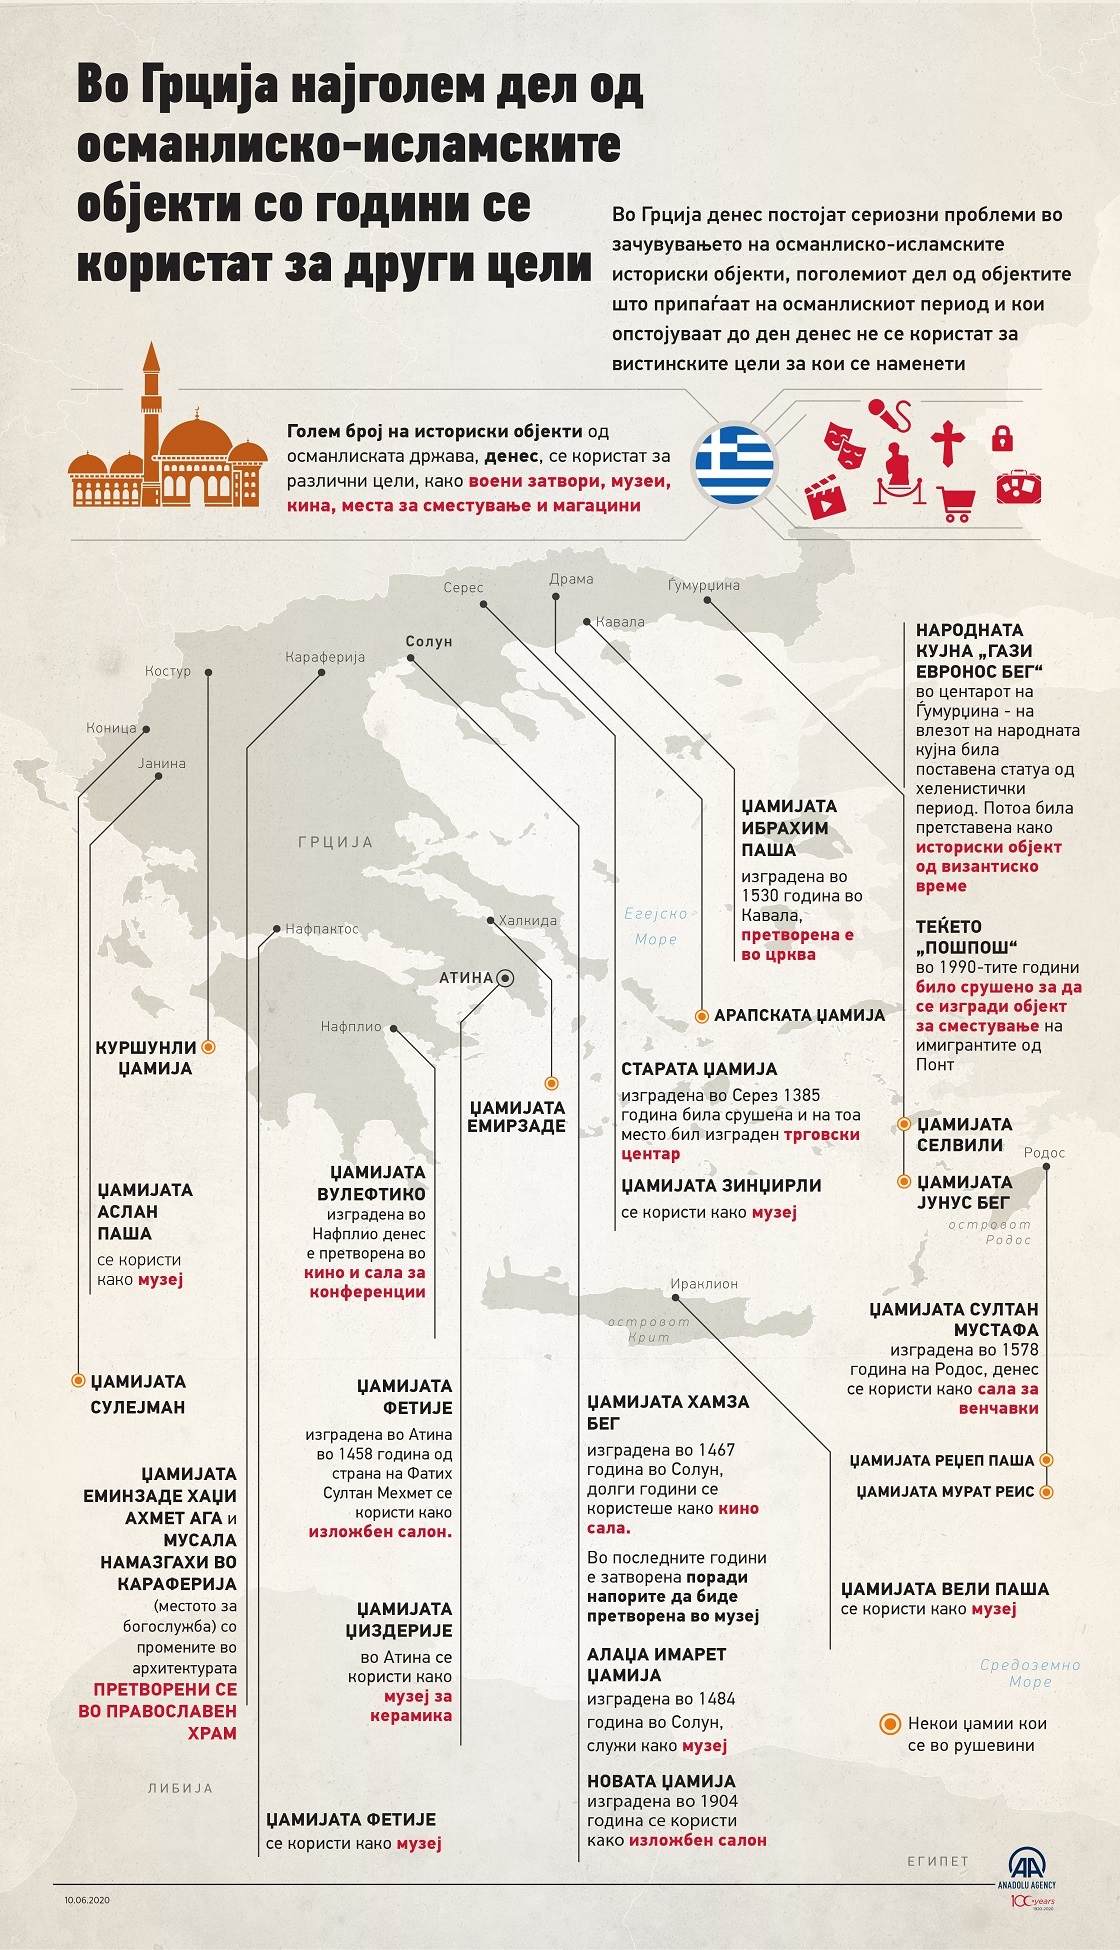 Во Грција најголем дел од османлиско-исламските објекти со години се користат за други цели